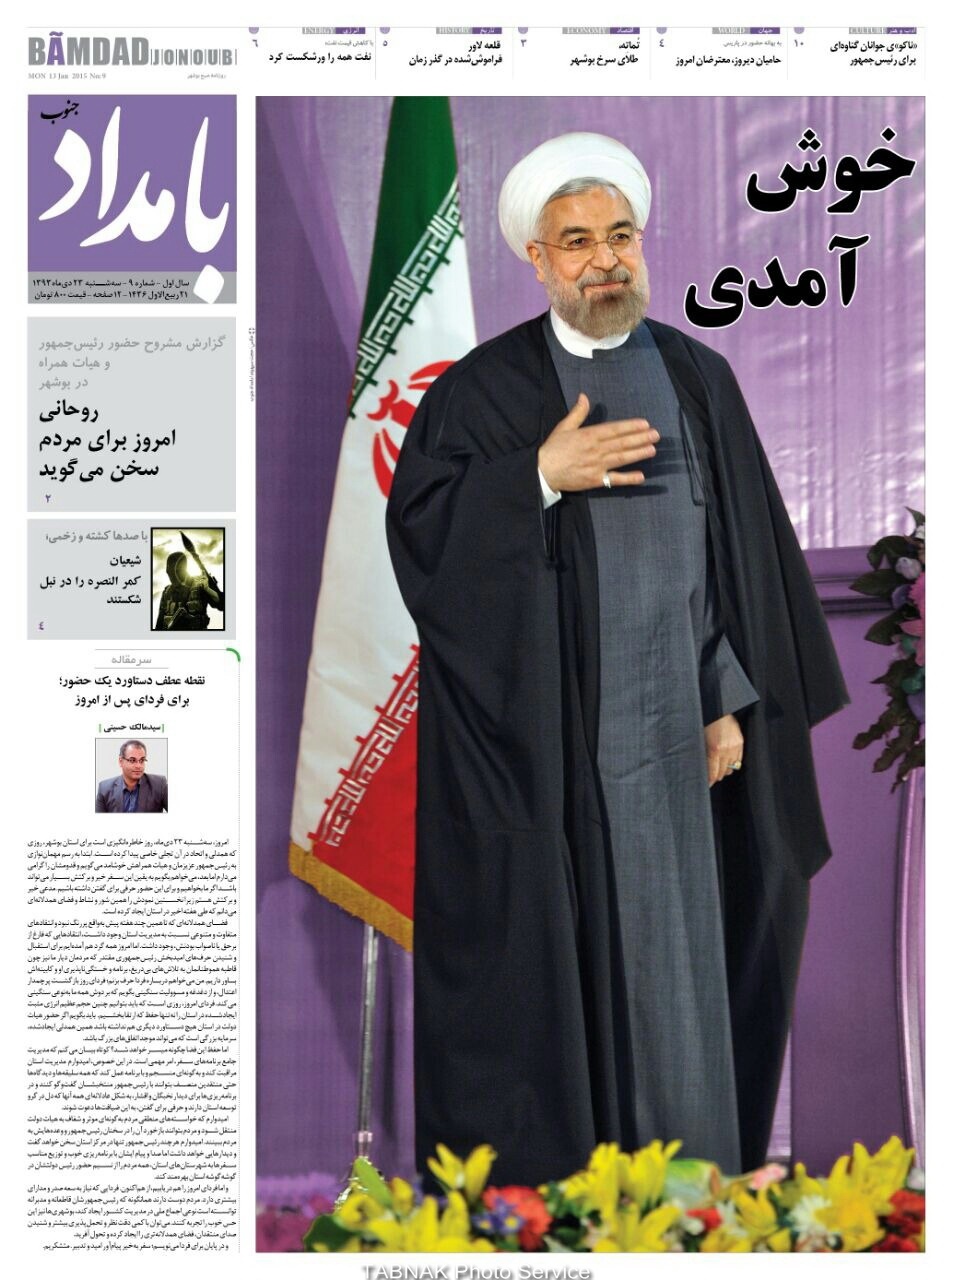 تیتر متفاوت روزنامه بوشهری برای روحانی